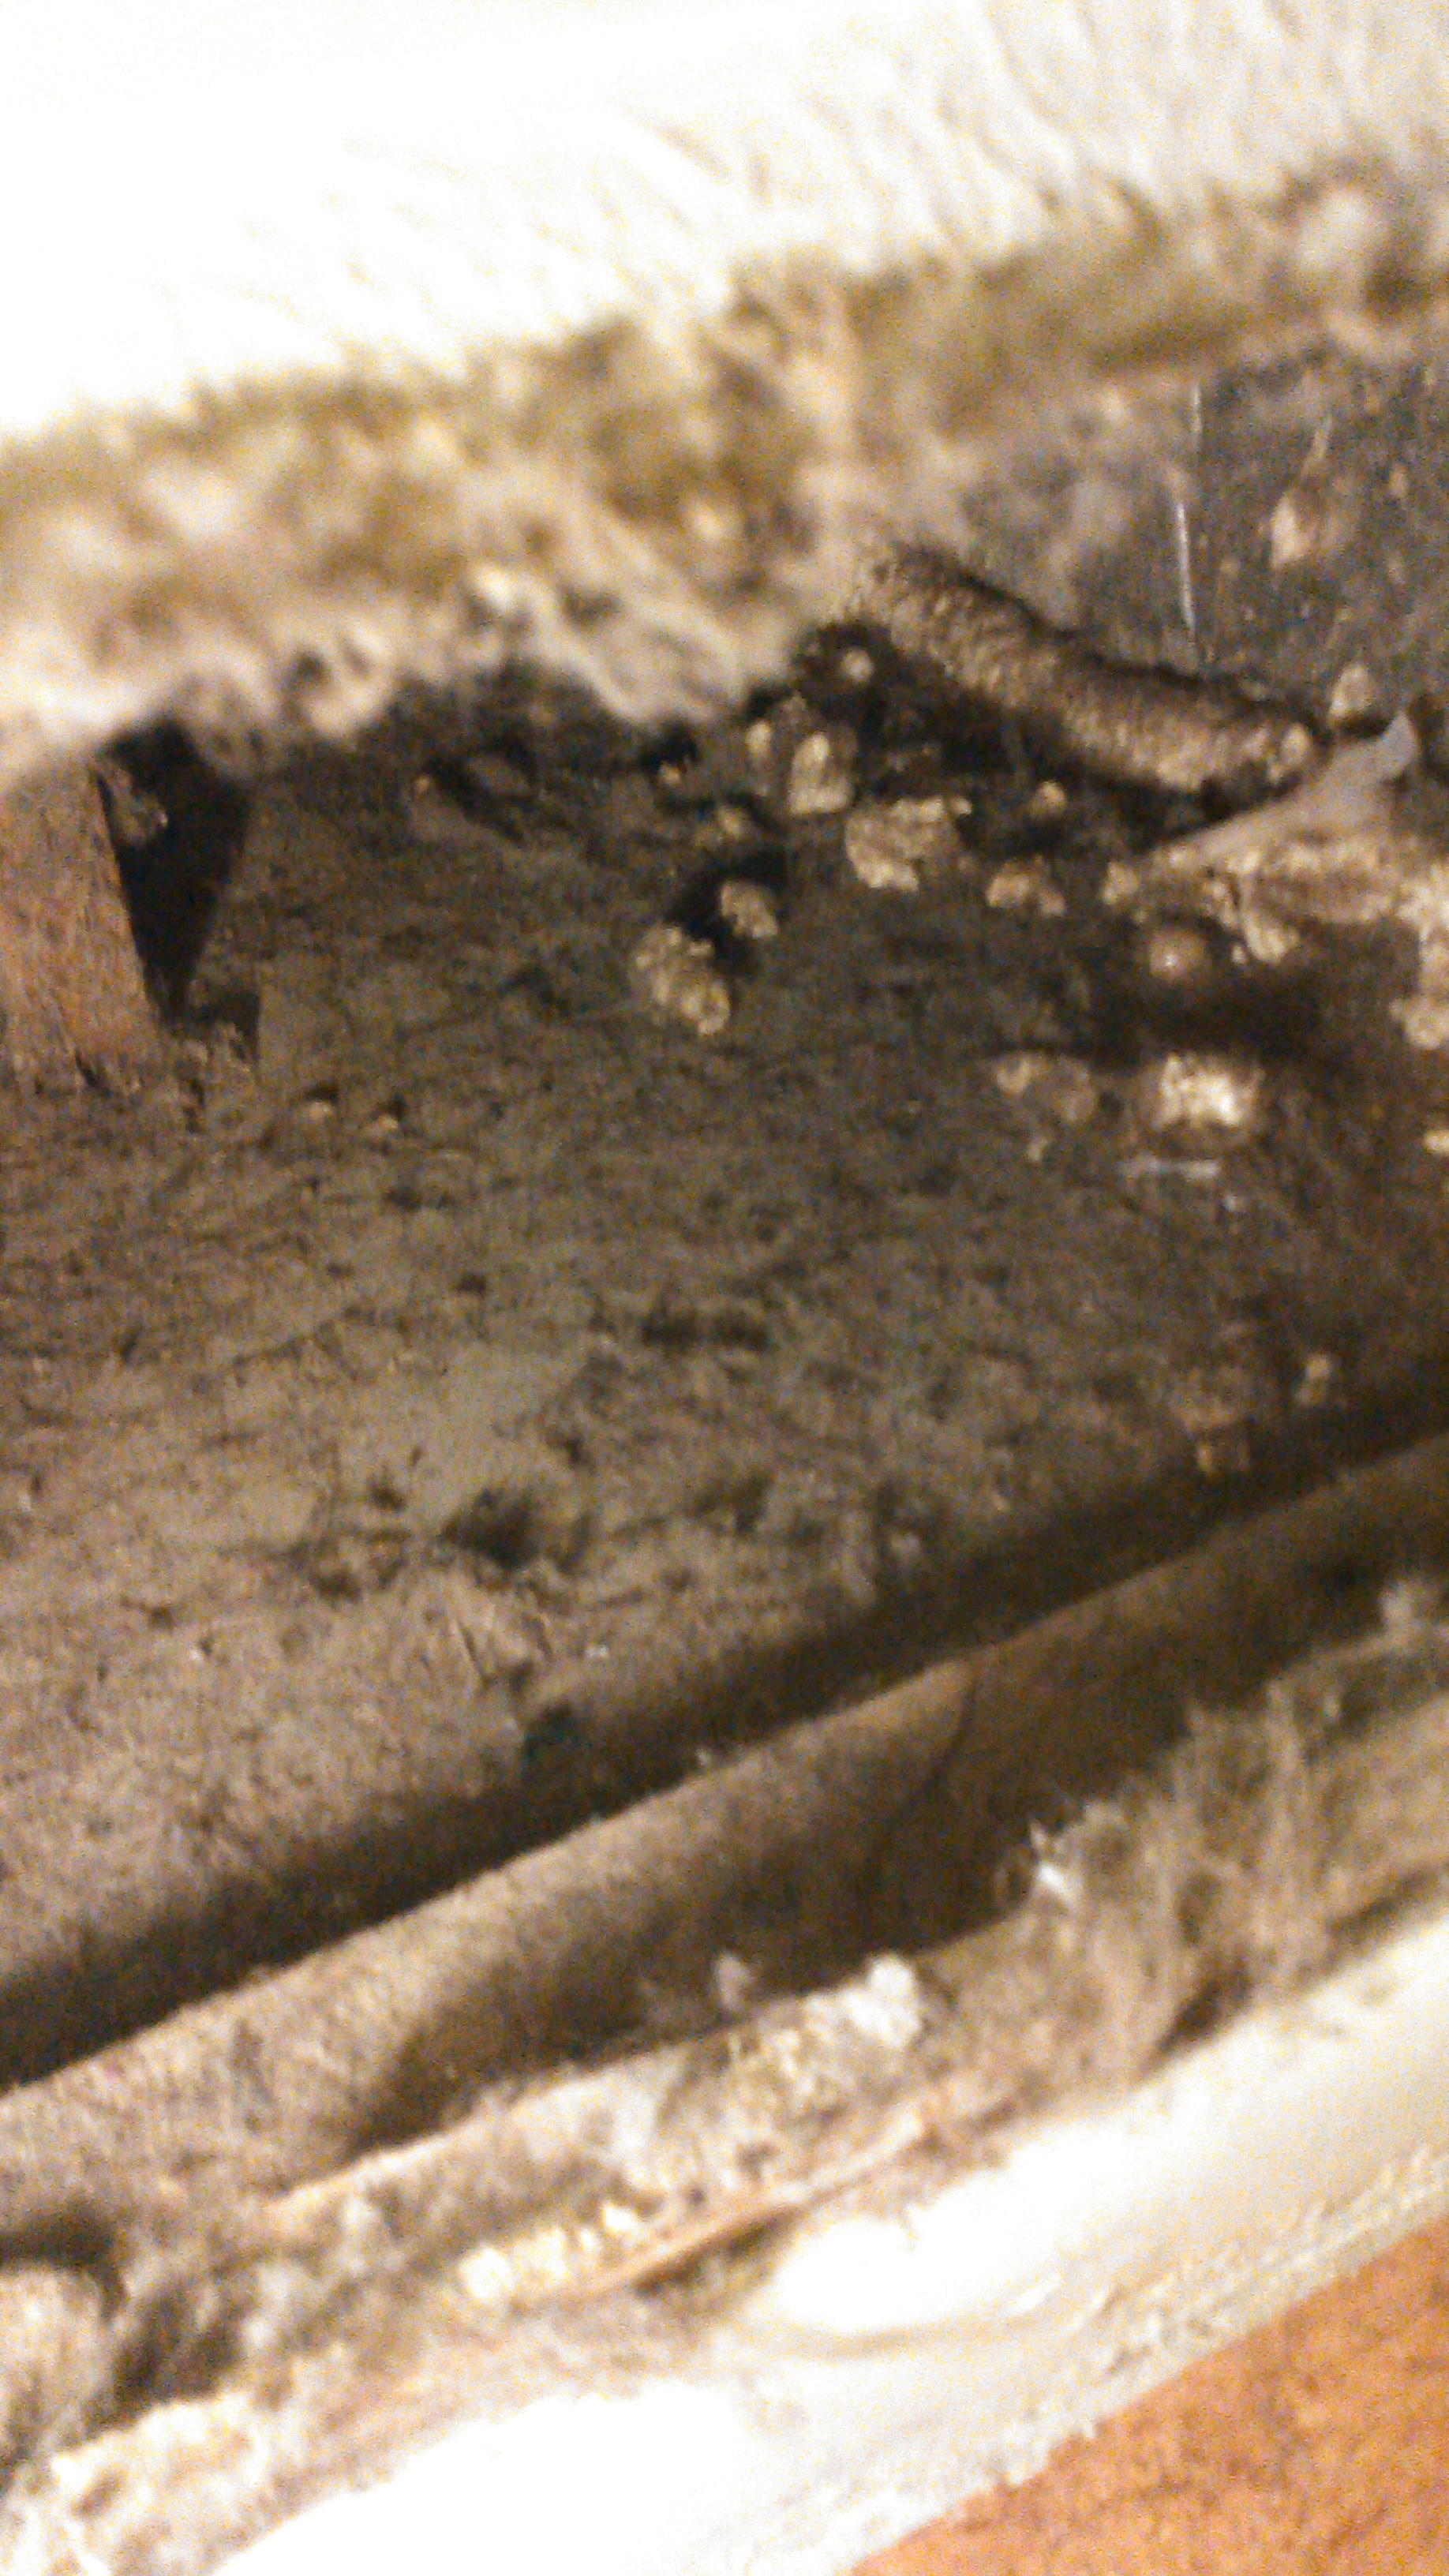 Area beneath furnace